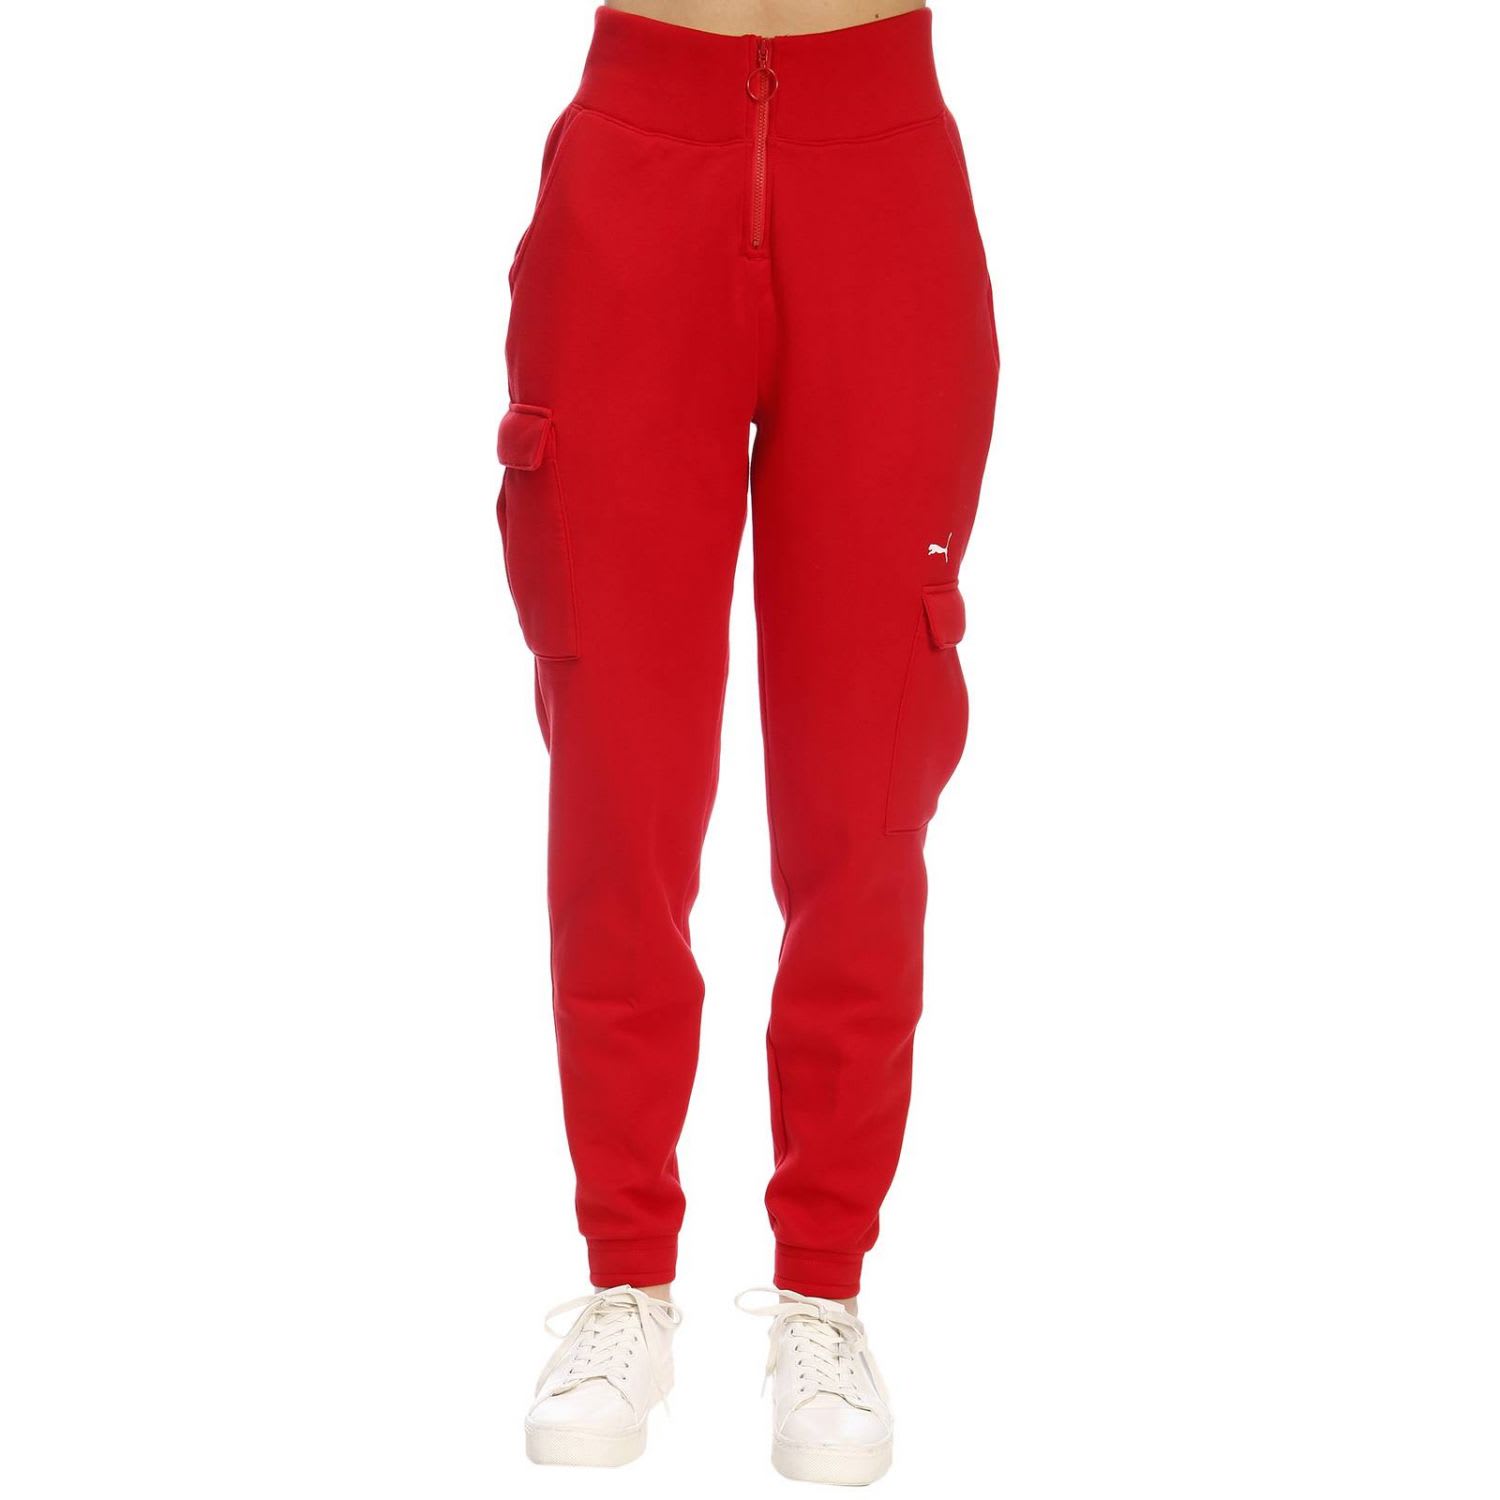 red puma pants